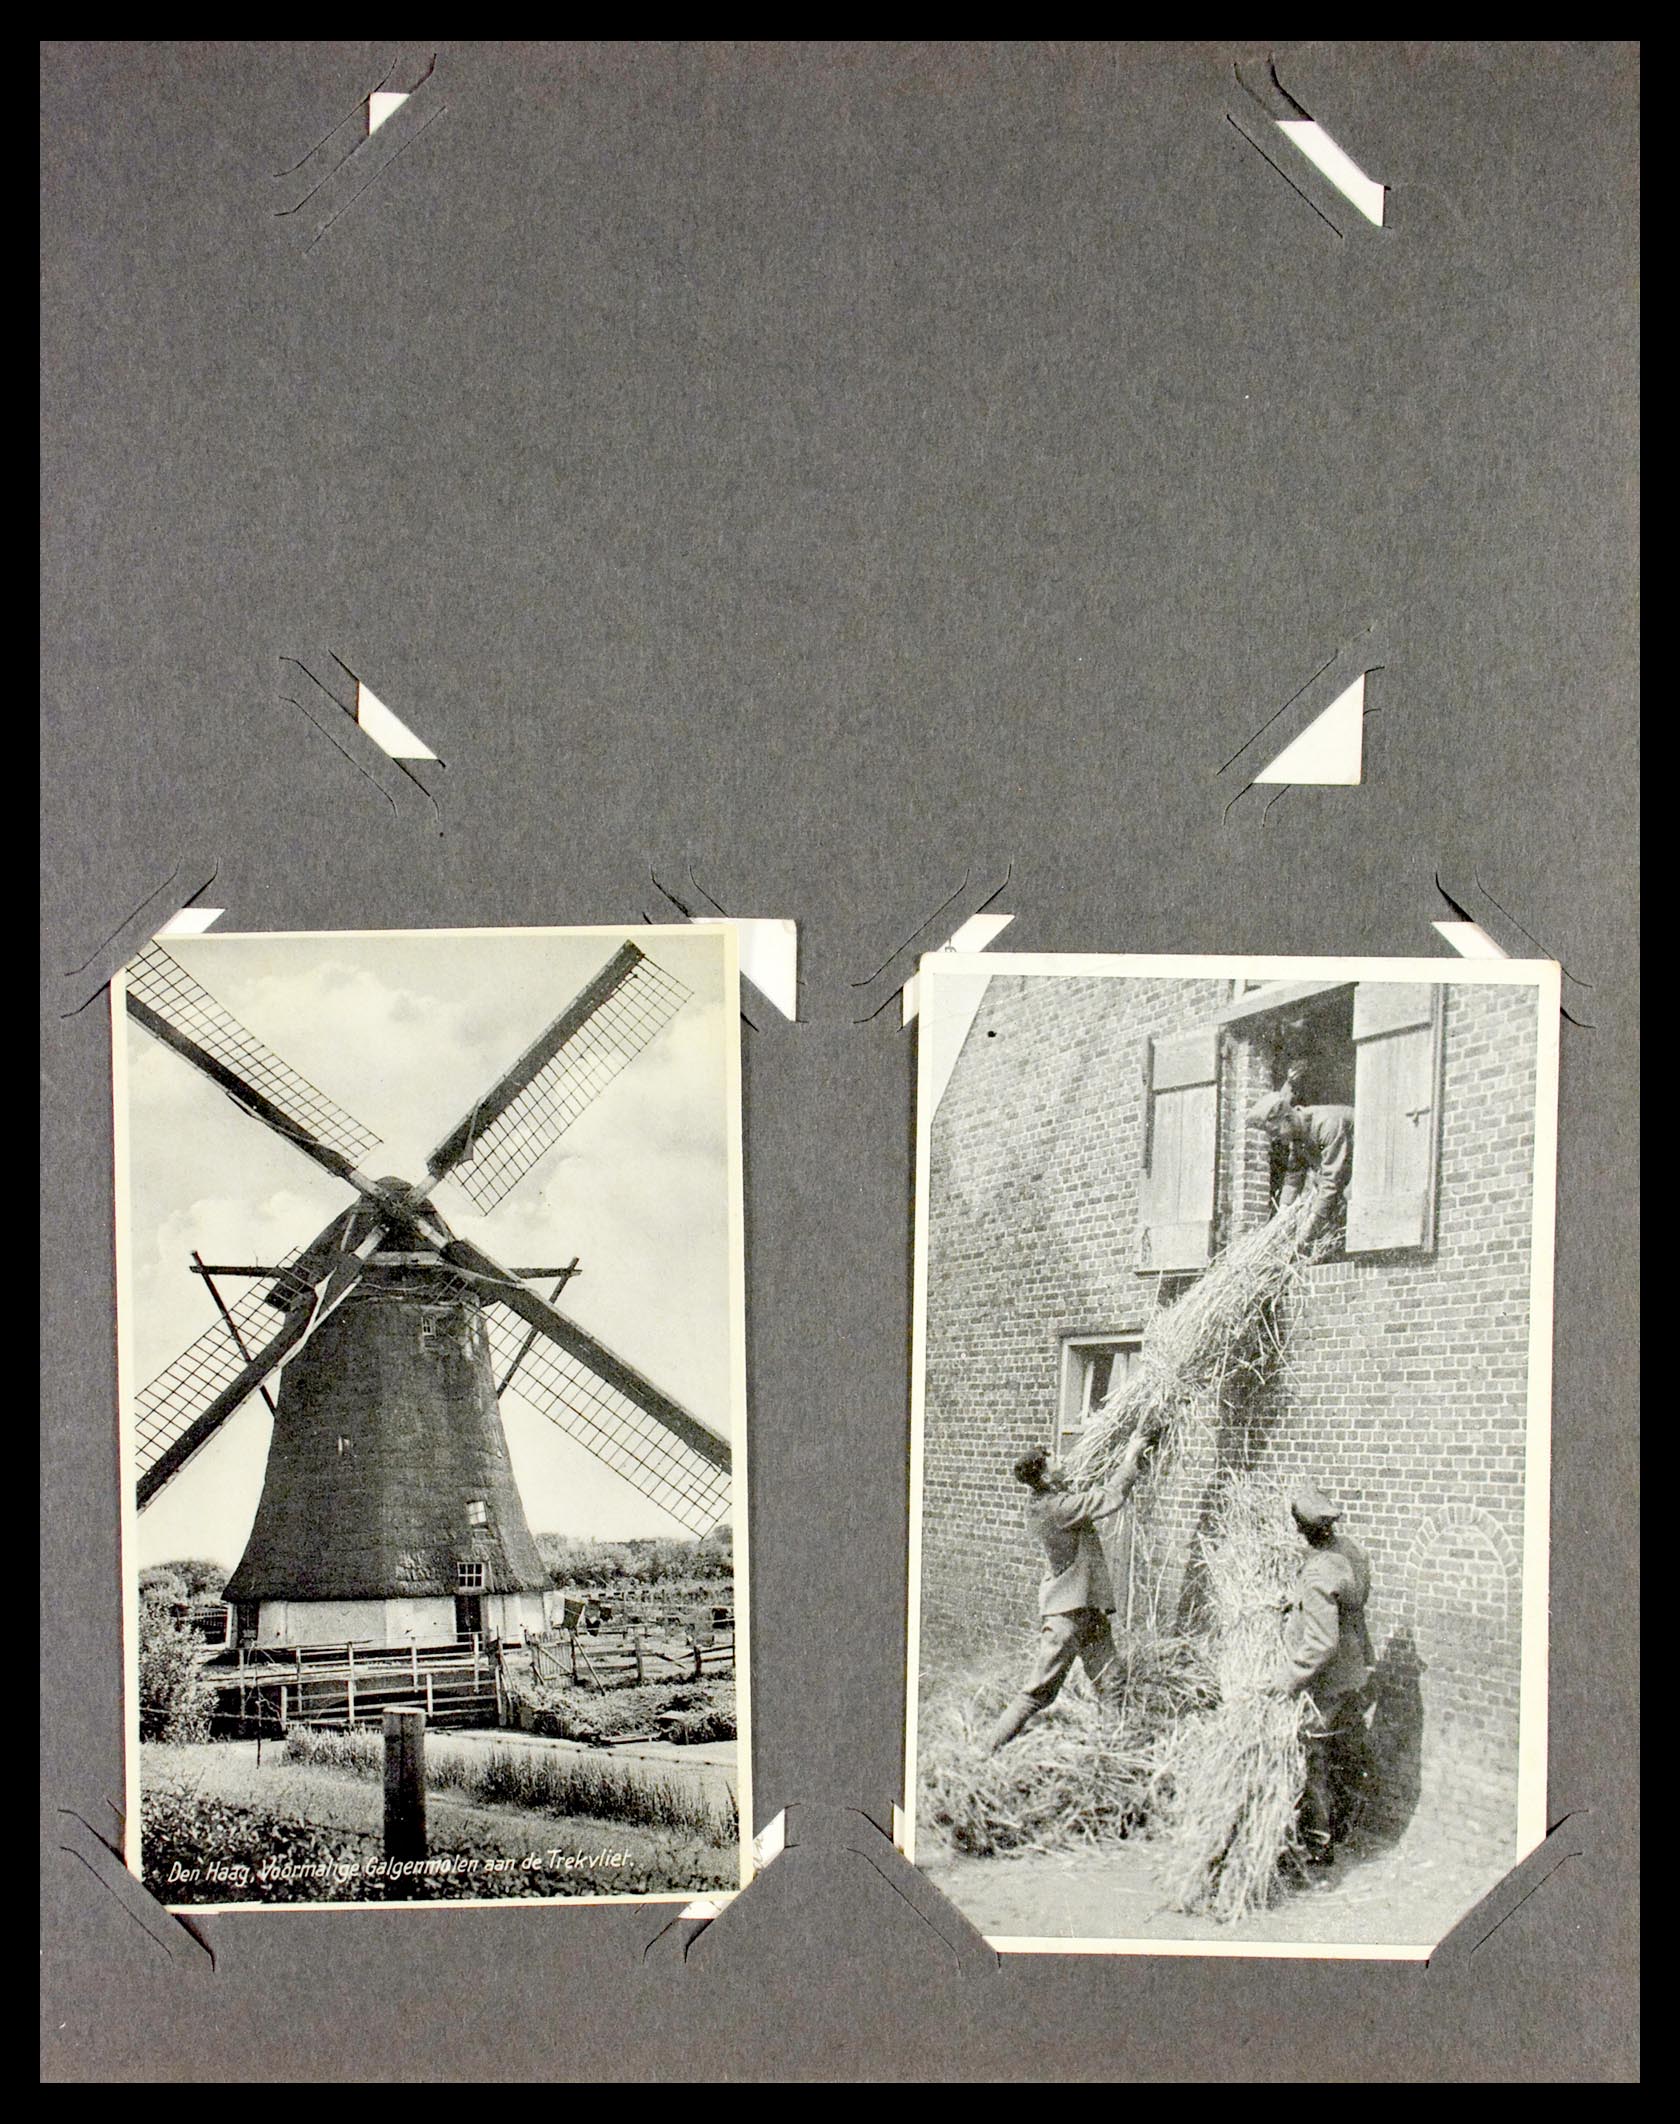 29518 008 - 29518 Nederland ansichtkaarten 1939-1940.